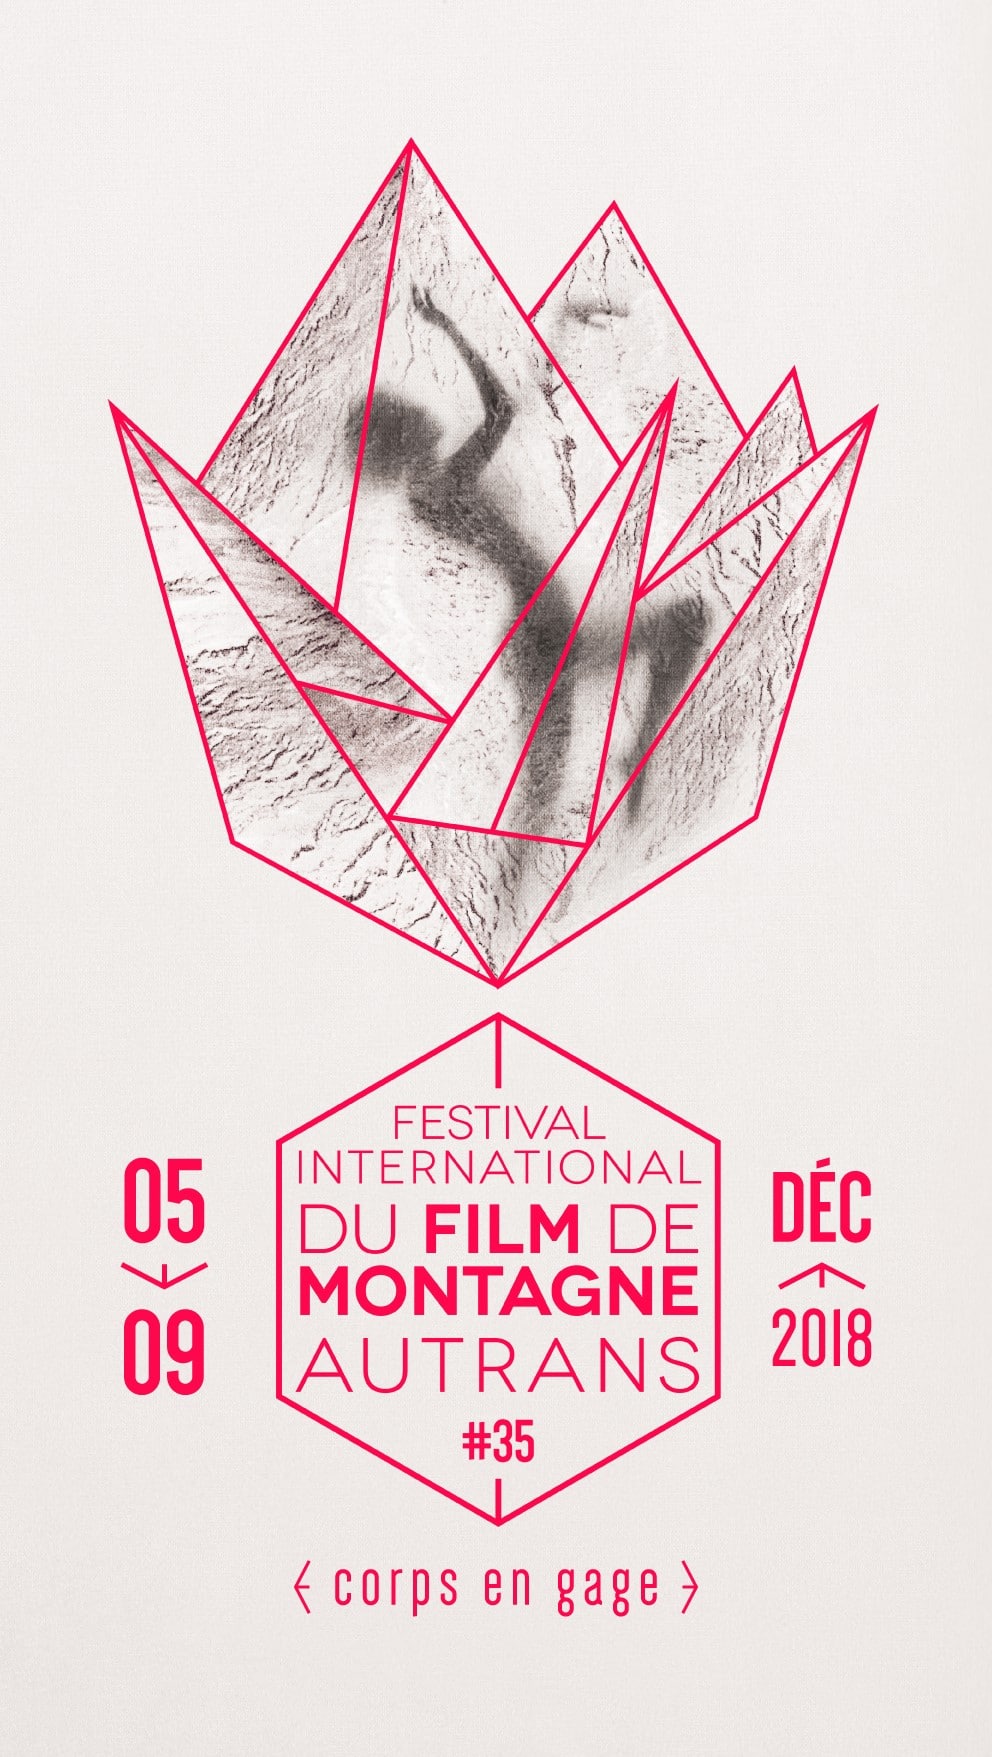 Festival international du film de montagne (Autrans)